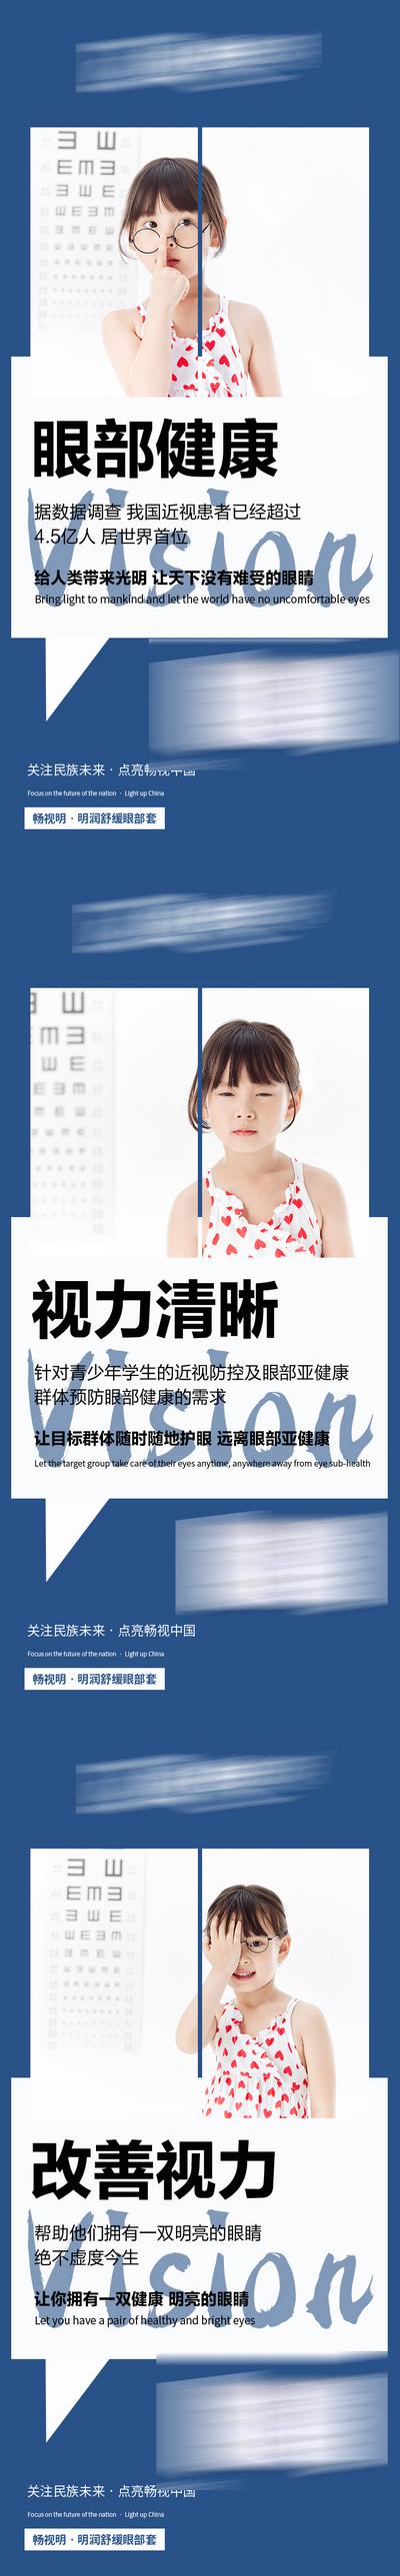 南门网 广告 海报 新零售 眼睛 视力 宣传 微商 防控 护眼 大健康 保健 系列